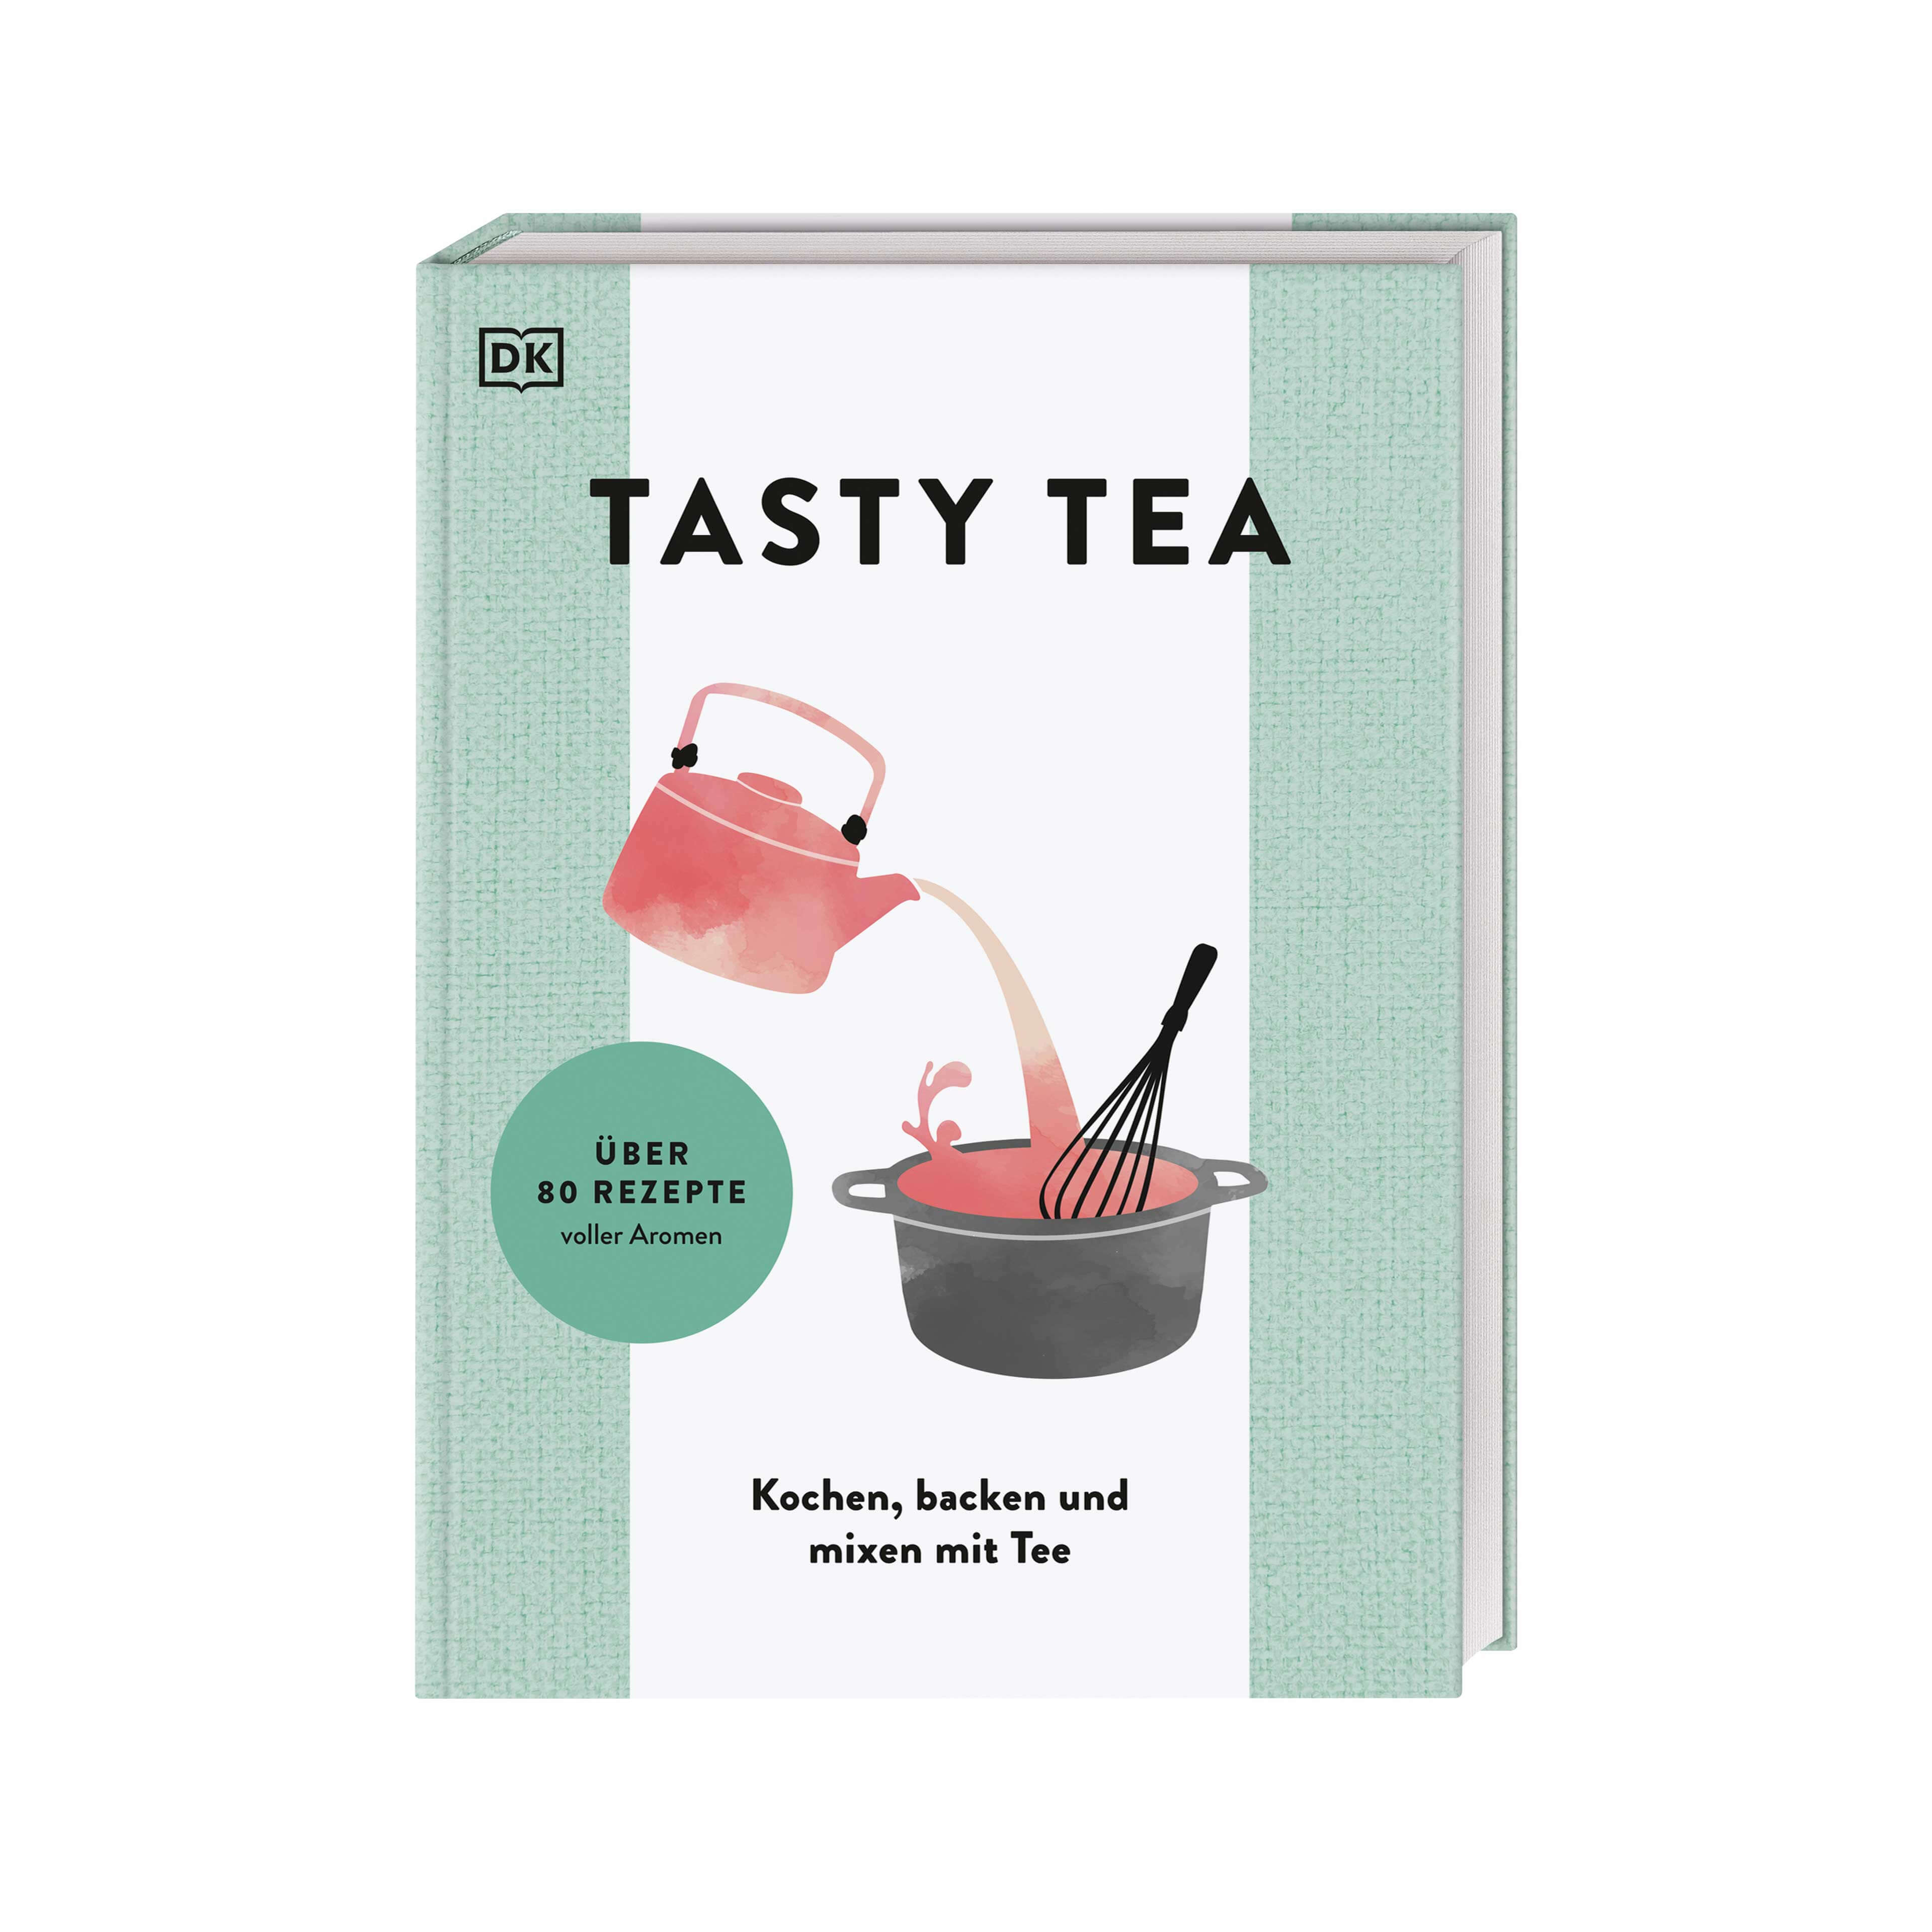 TASTY TEA - The tea cookbook